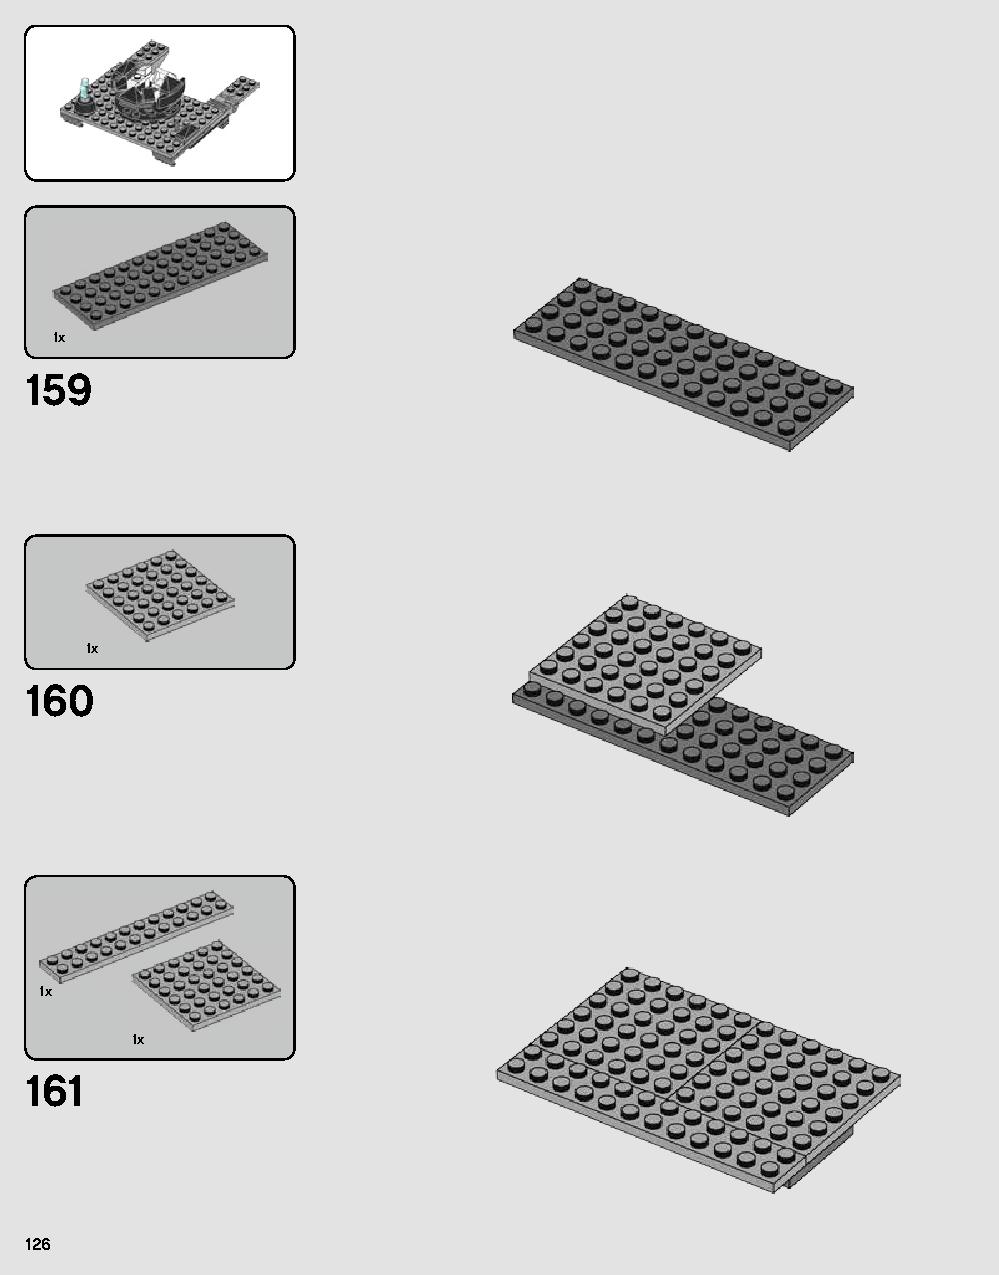 ダース・ベイダーの城 75251 レゴの商品情報 レゴの説明書・組立方法 126 page